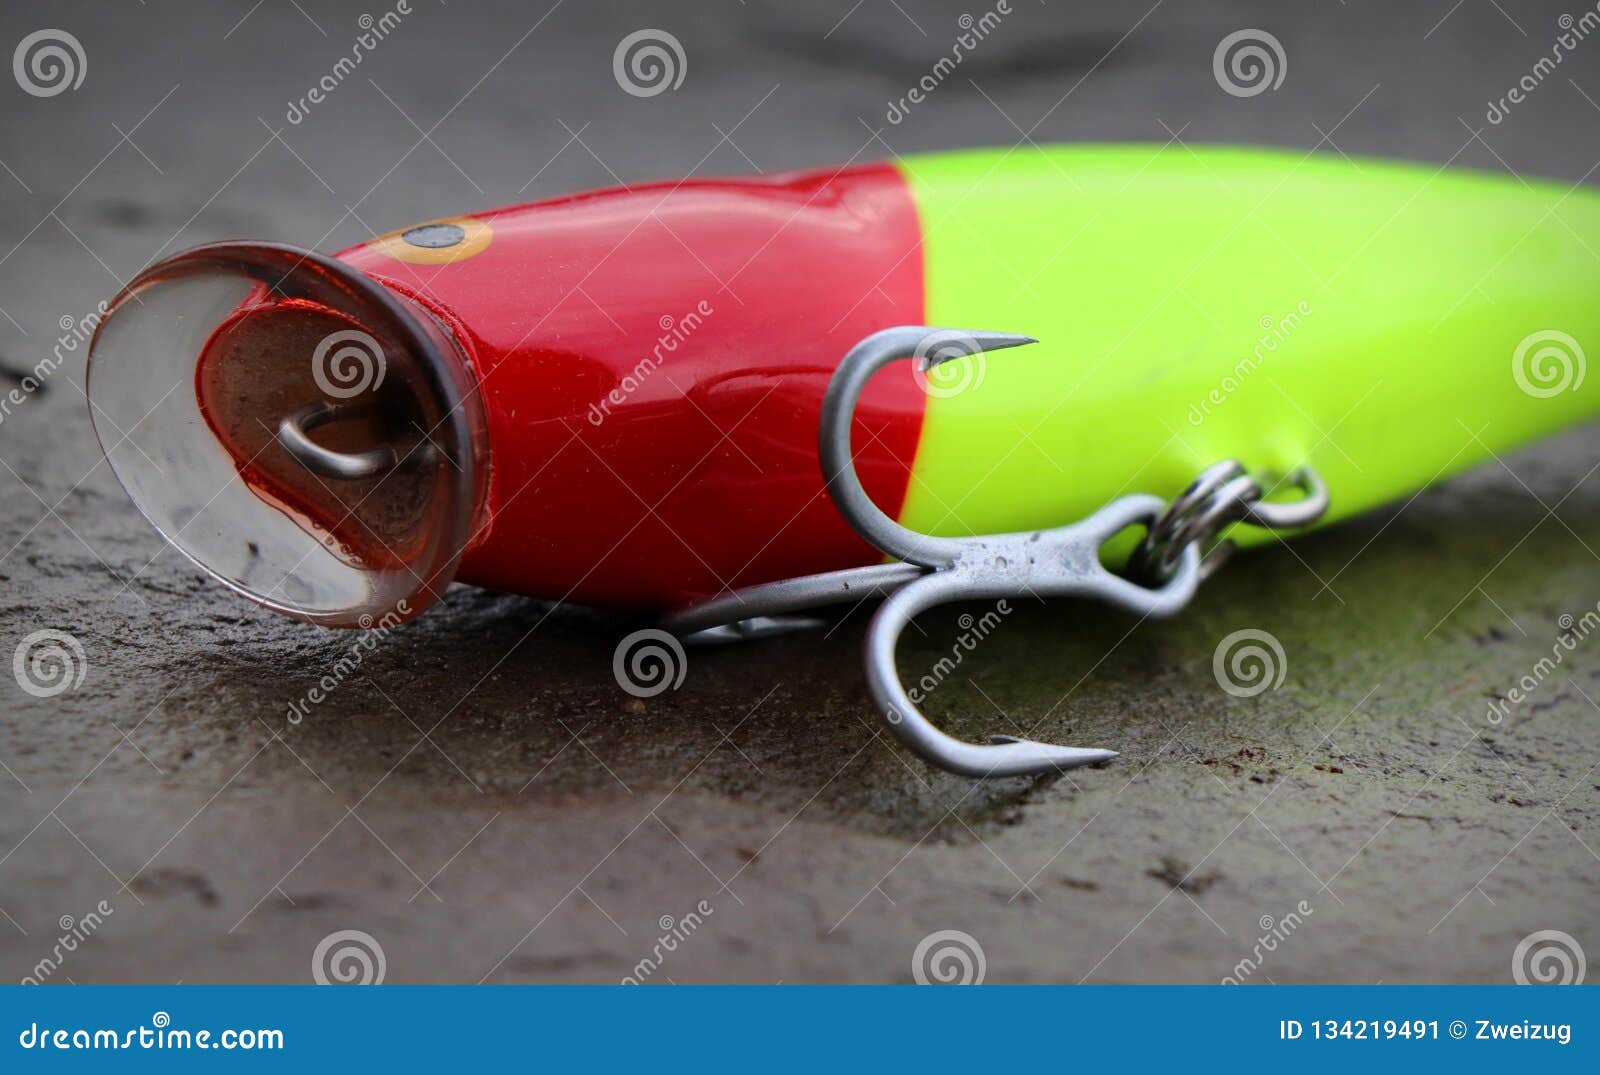 Rapala Fishing Popper Lure Plug for Large Saltwater Fish Stock Image -  Image of lifelike, large: 134219491